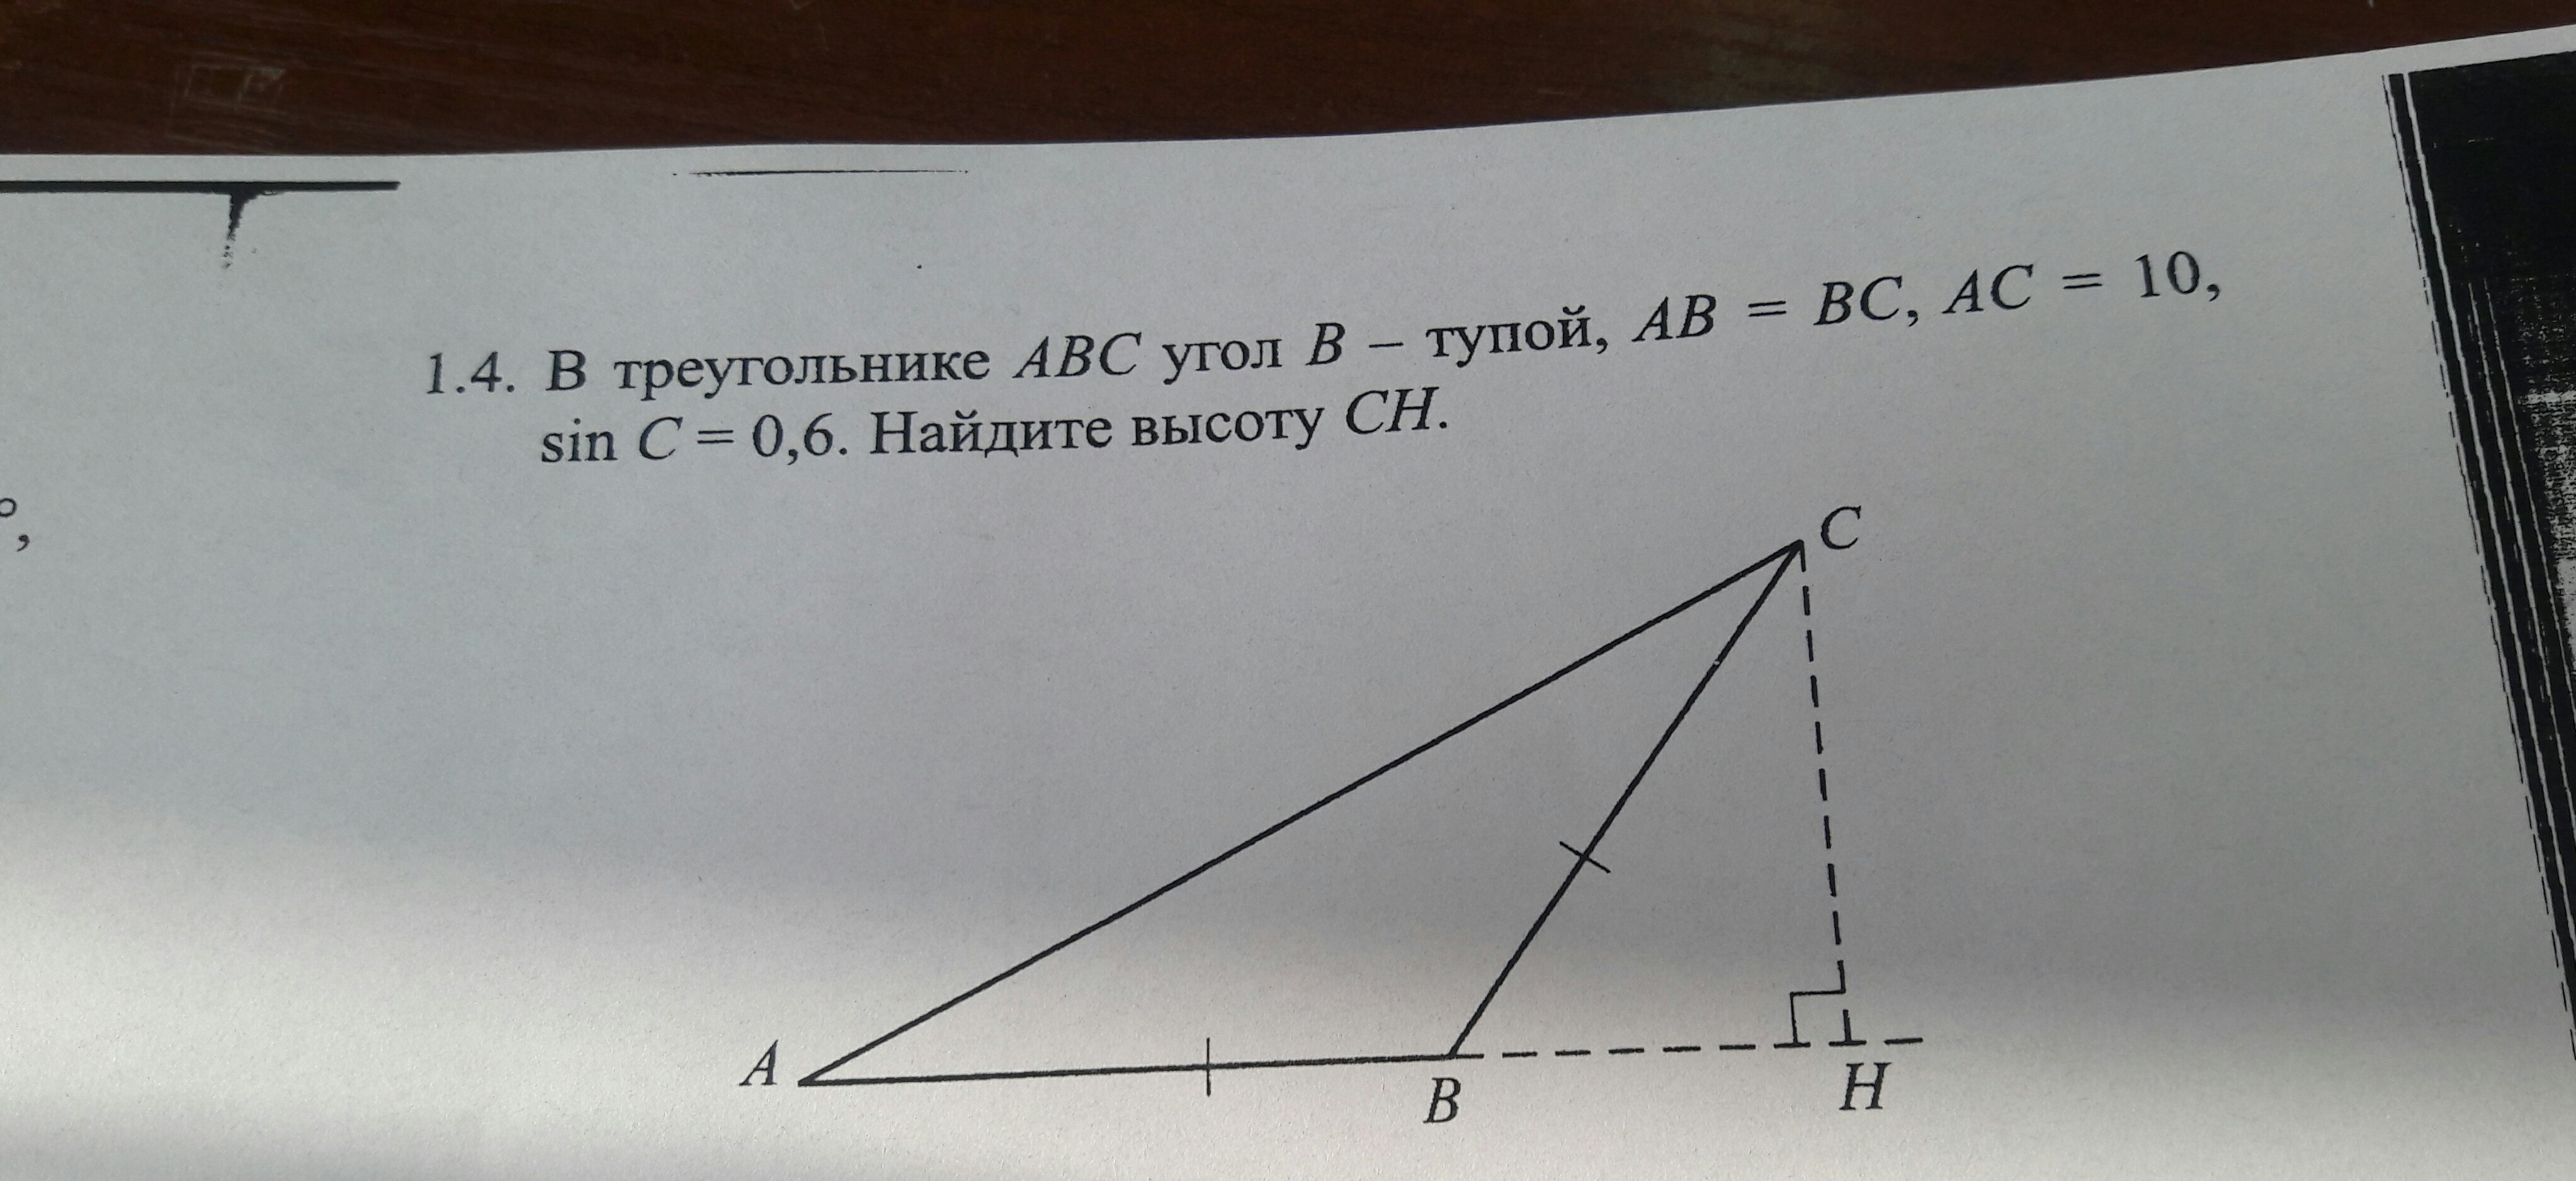 В треугольнике авс угол б 55. Угол АБС В треугольнике АБС.